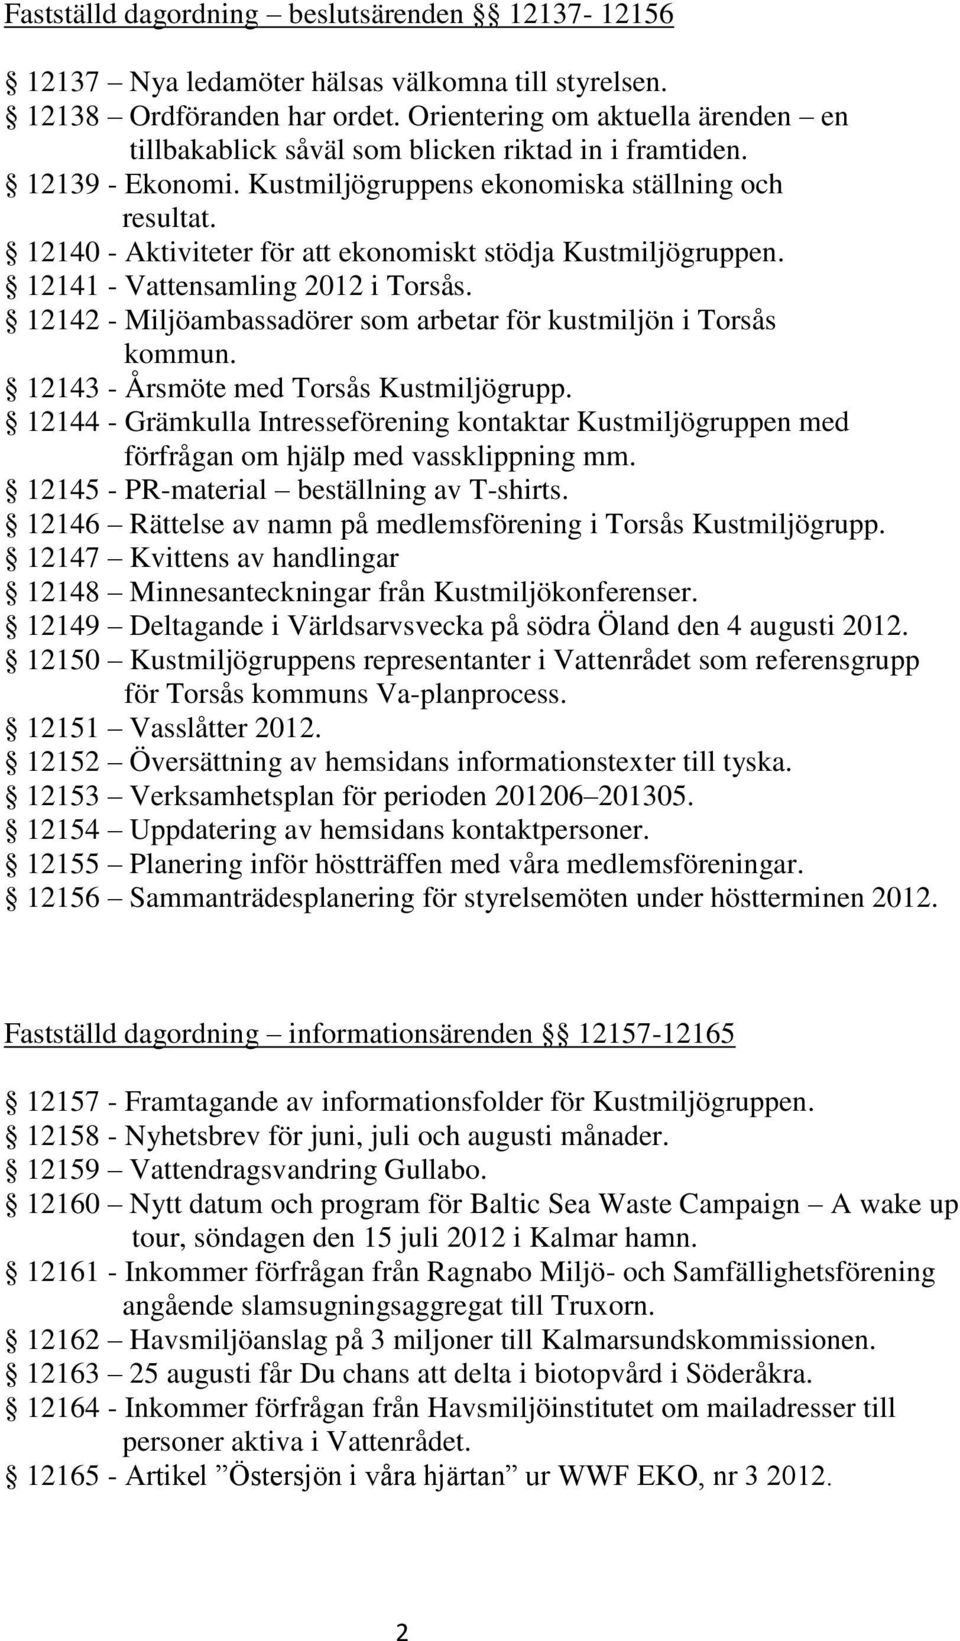 12140 - Aktiviteter för att ekonomiskt stödja Kustmiljögruppen. 12141 - Vattensamling 2012 i Torsås. 12142 - Miljöambassadörer som arbetar för kustmiljön i Torsås kommun.